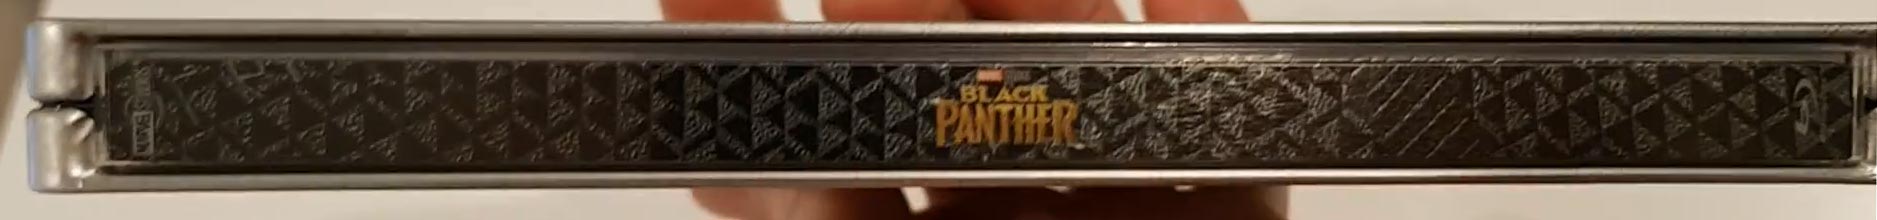 Black-Panther-steelbook-6